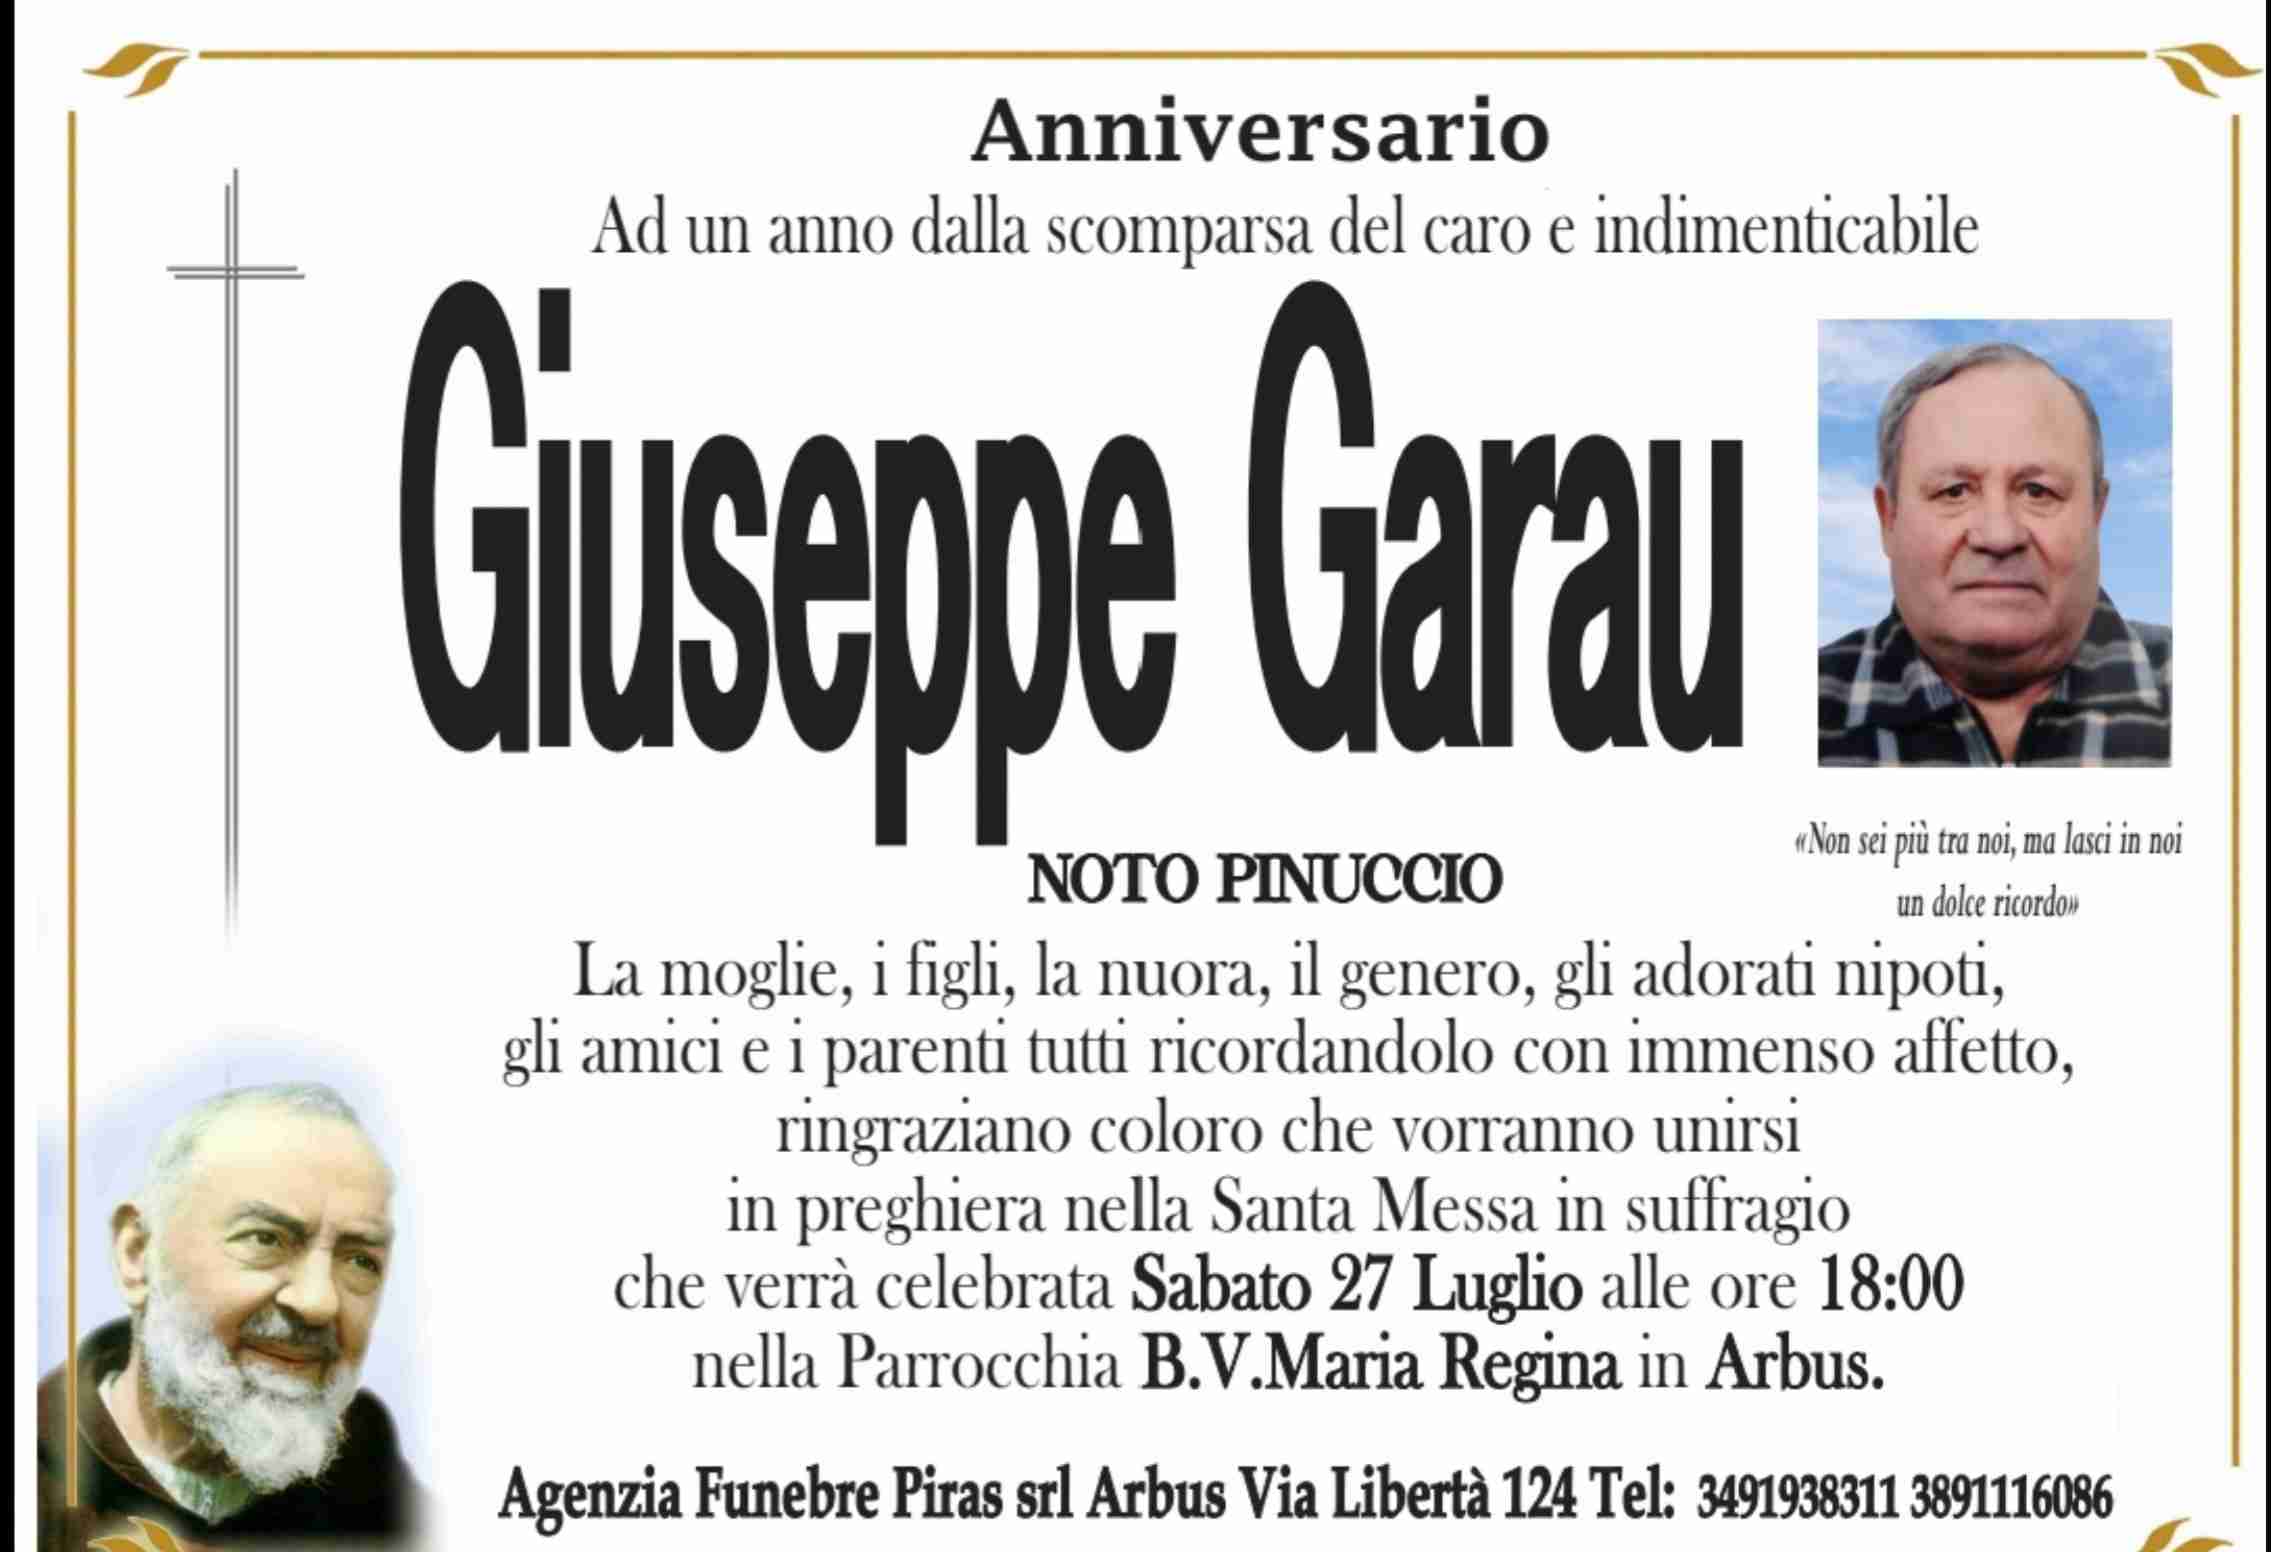 Giuseppe Garau